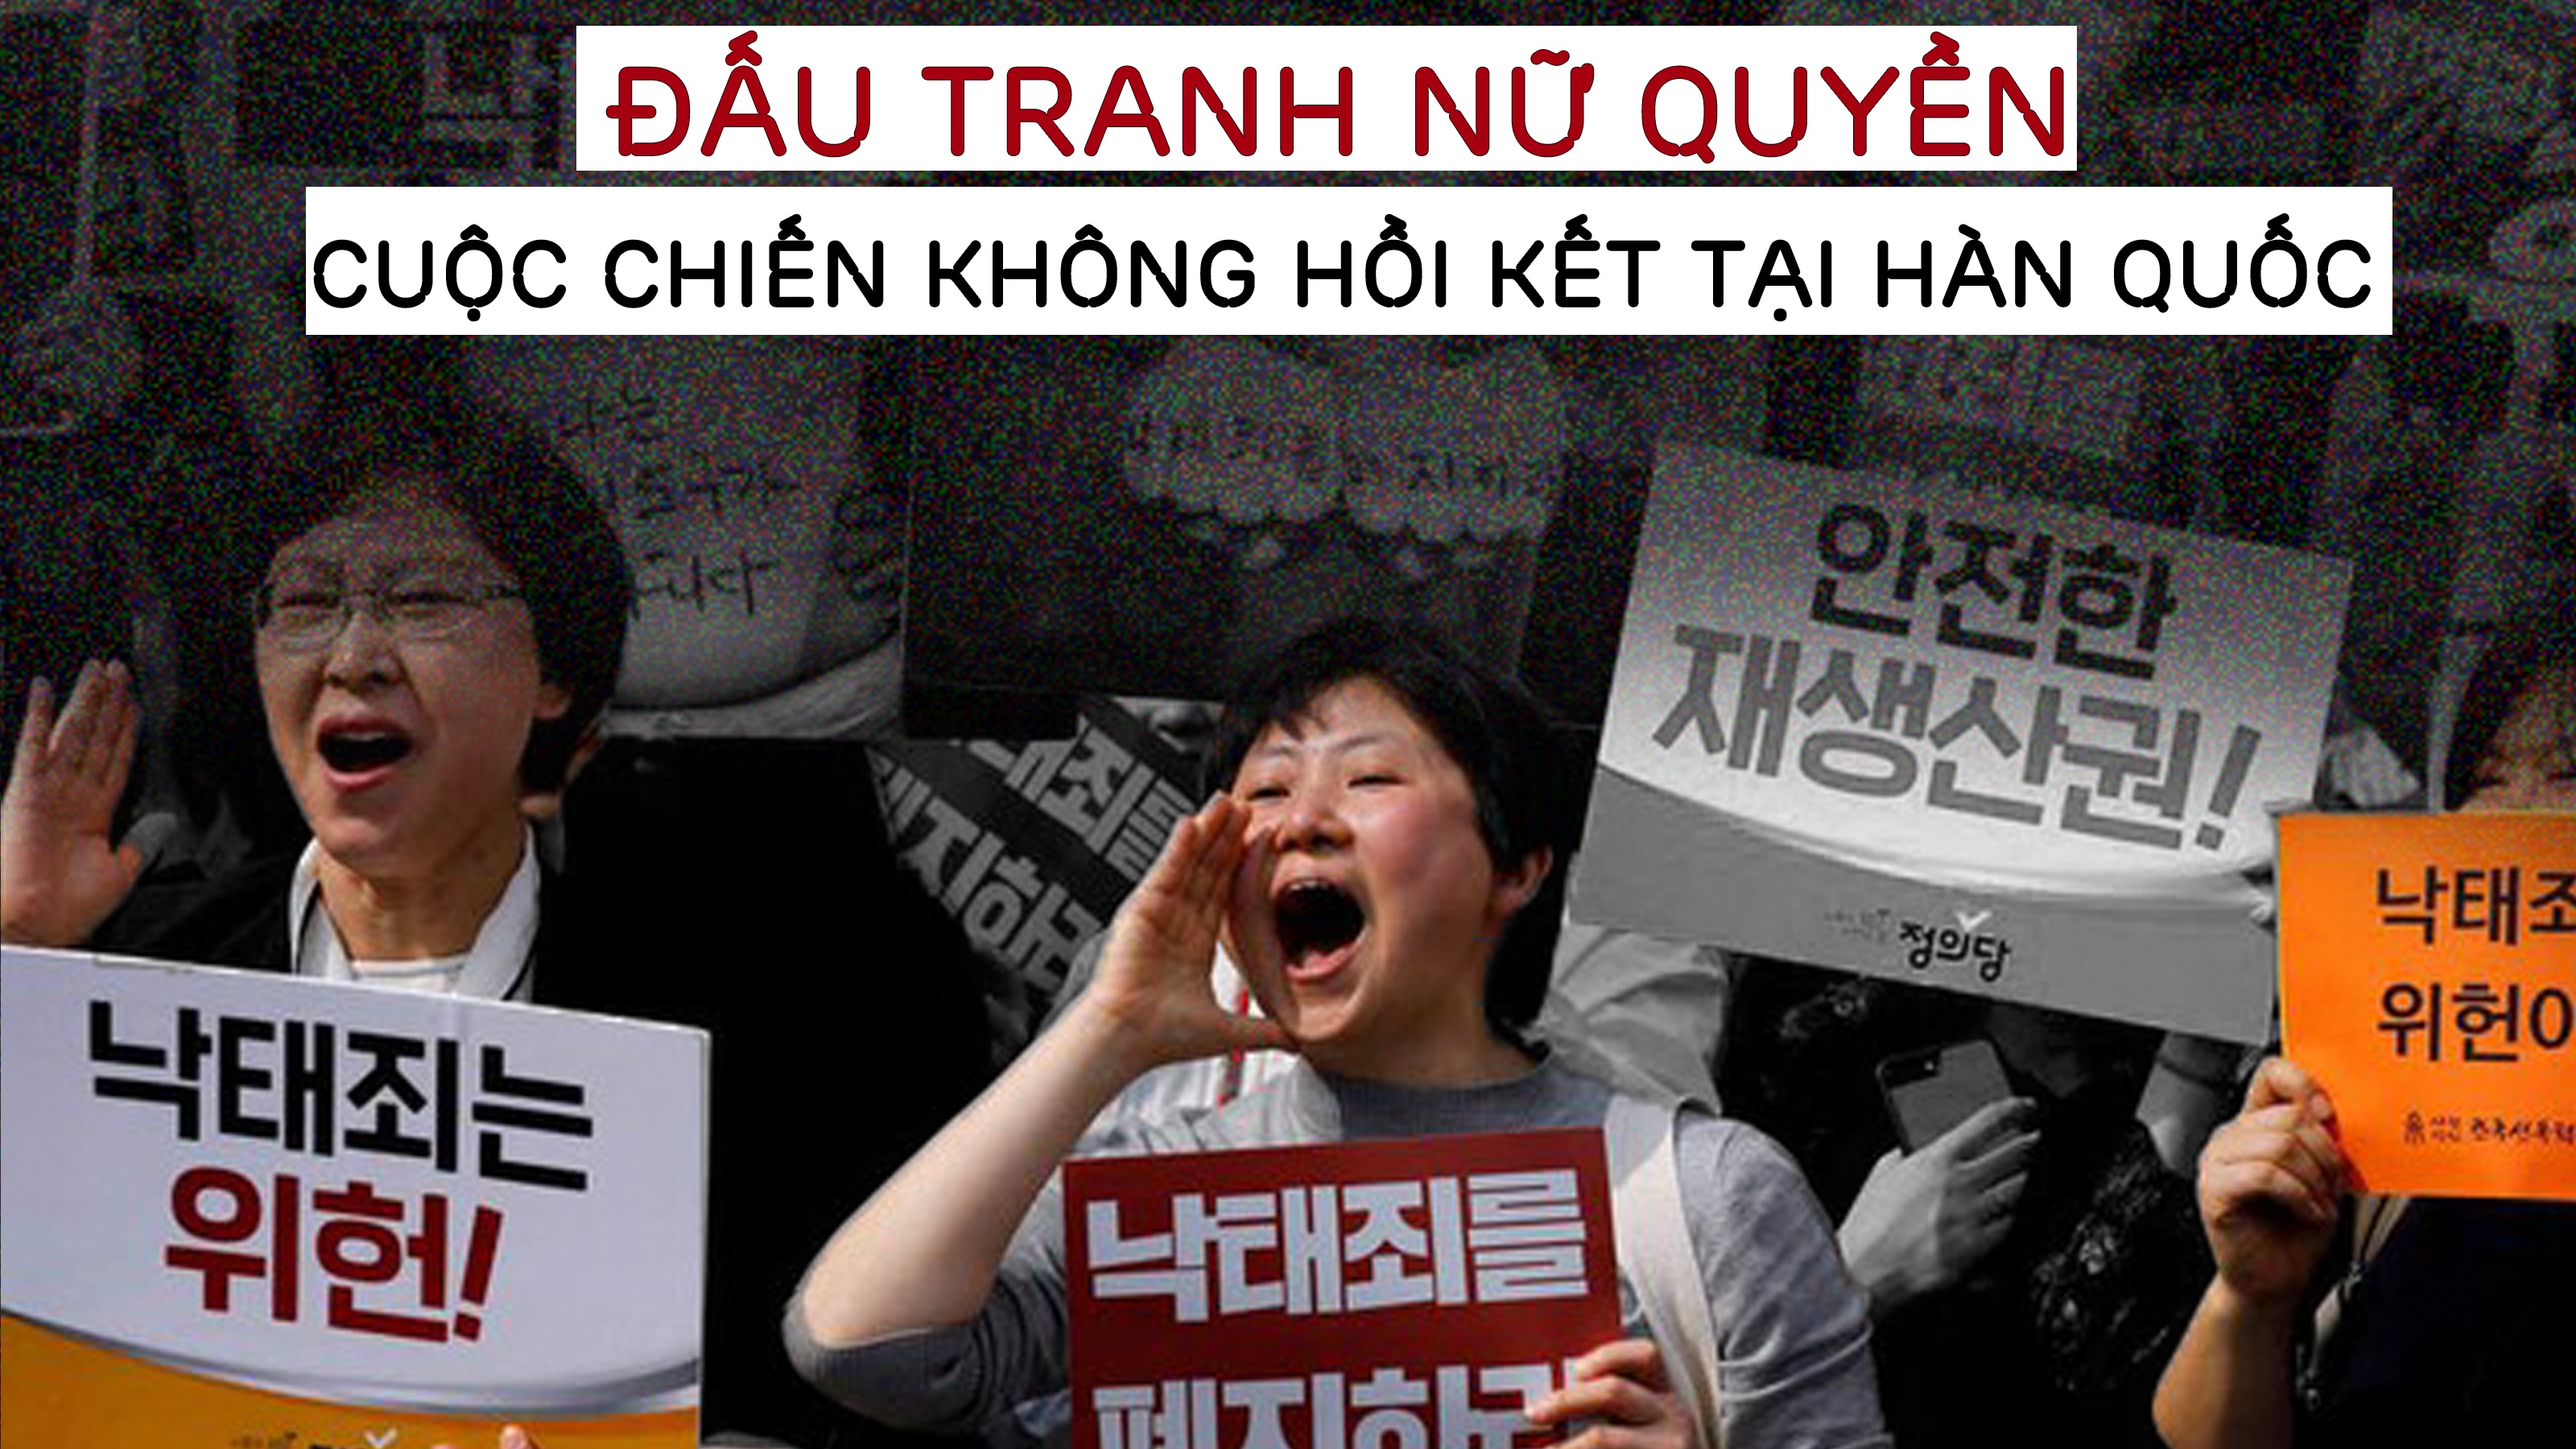 Đấu tranh nữ quyền - Cuộc chiến không hồi kết tại Hàn Quốc